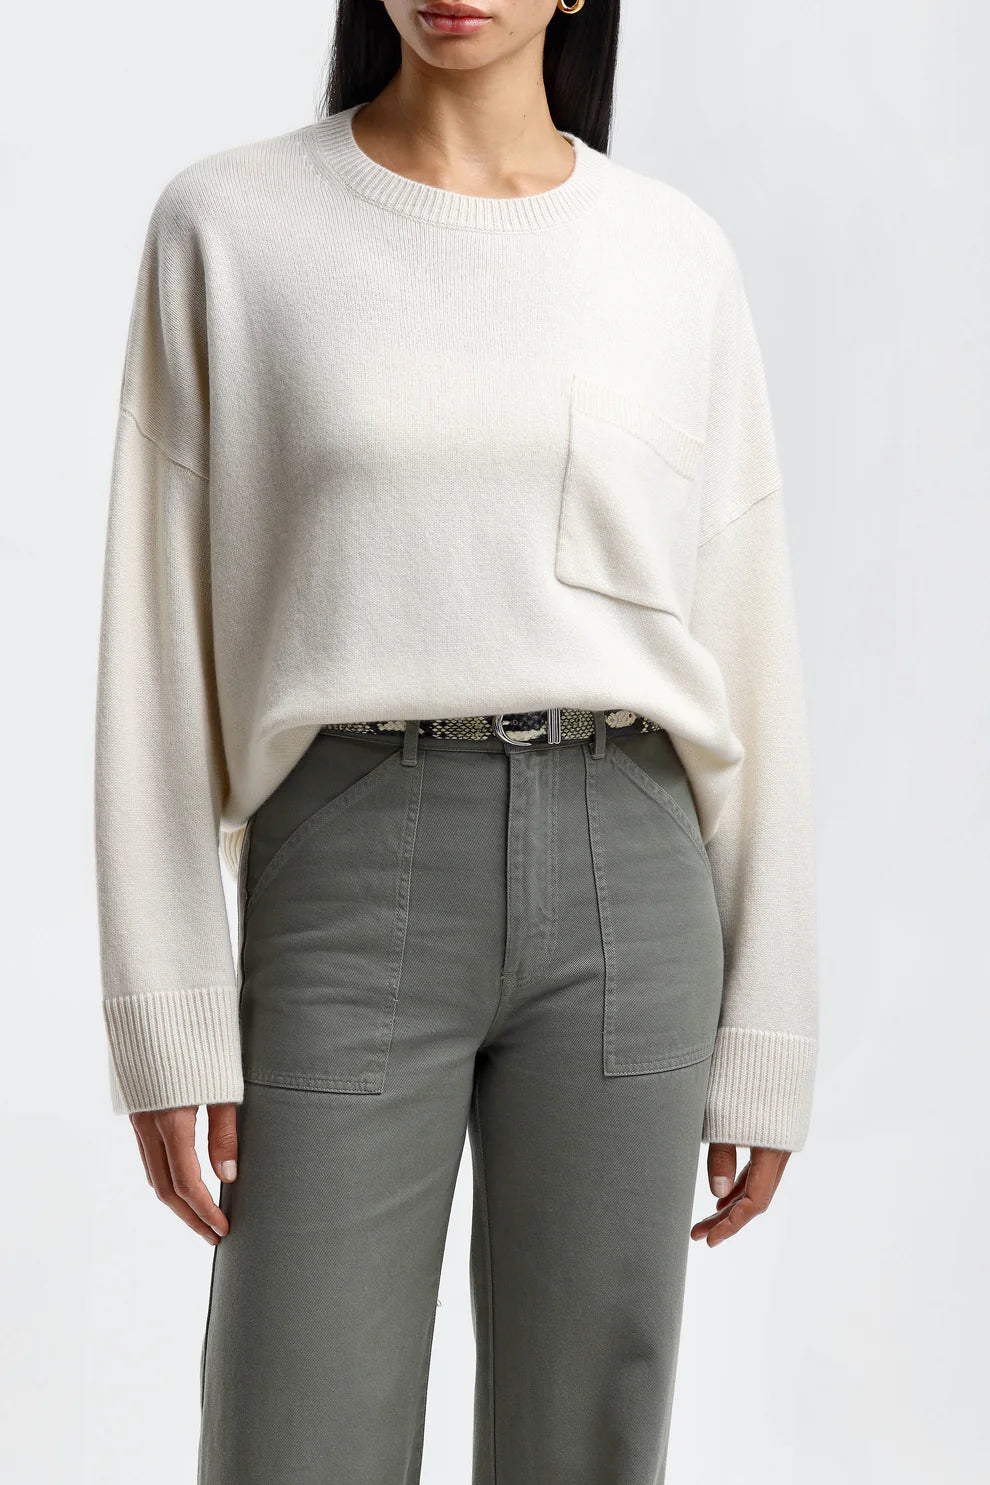 Lisa Yang Andie Sweater